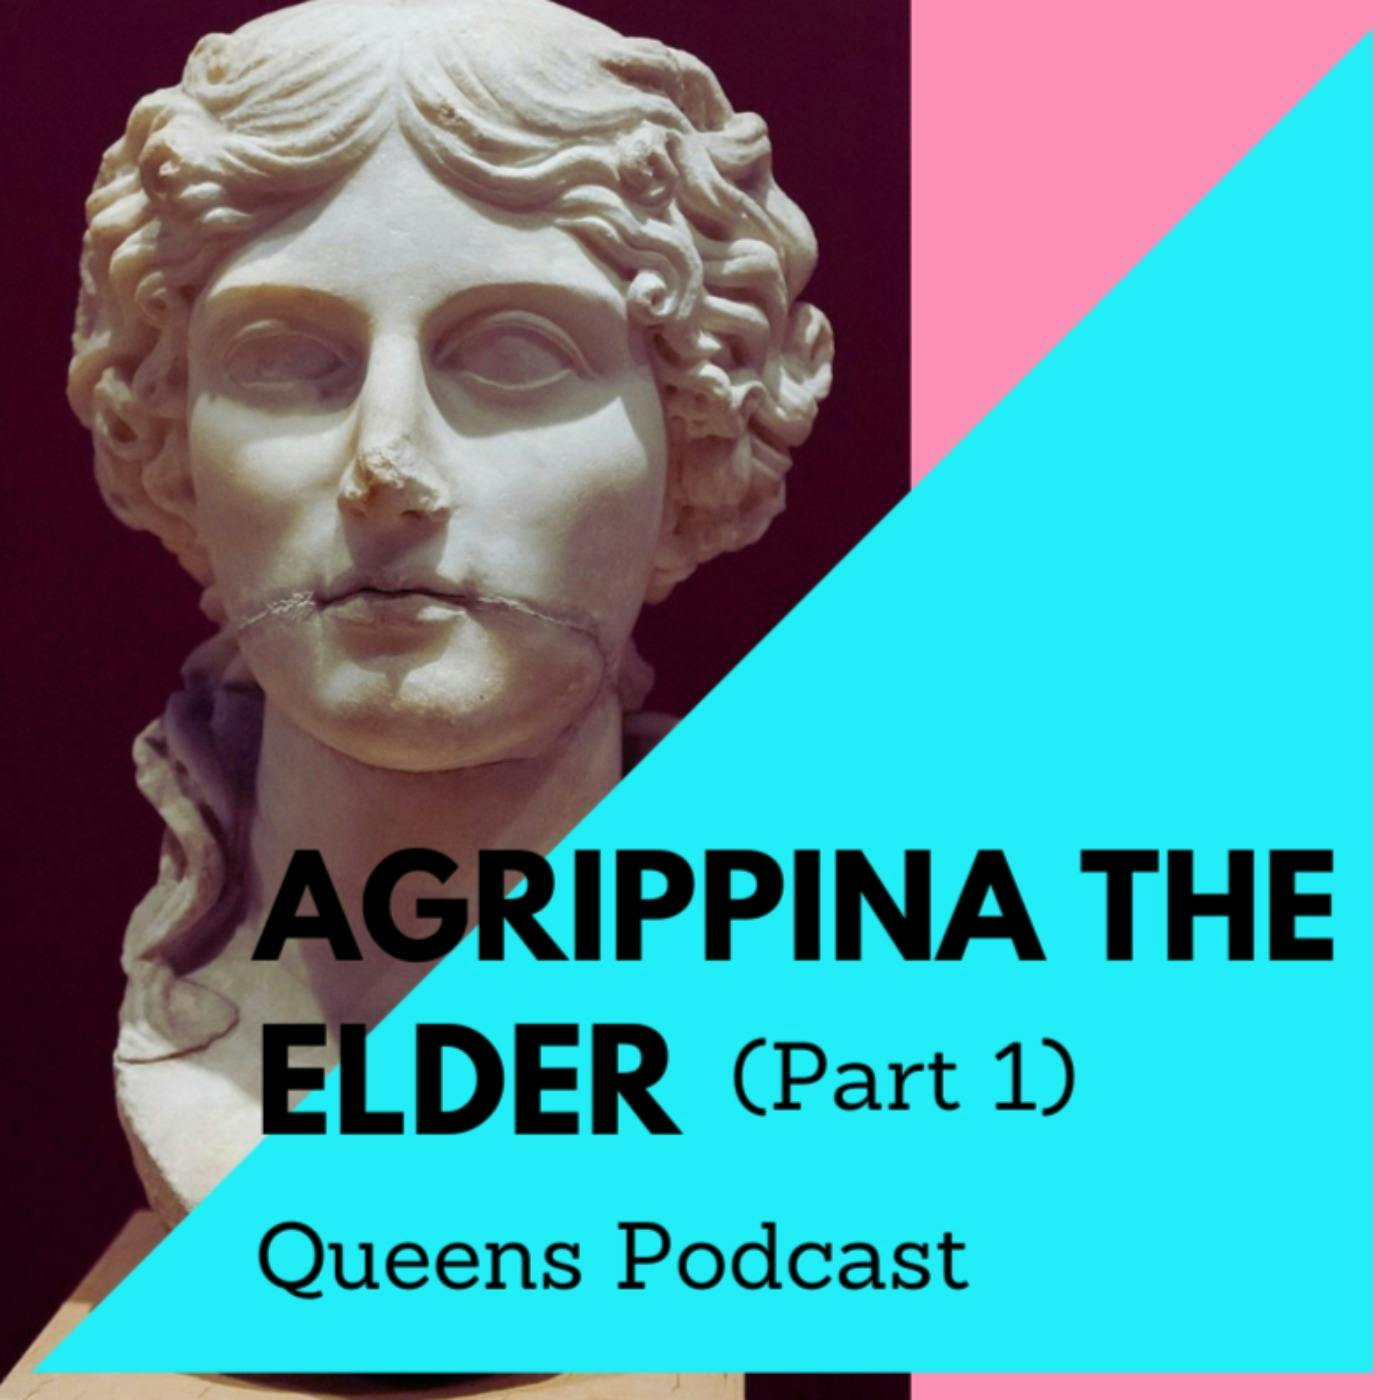 Agrippina the Elder part 1